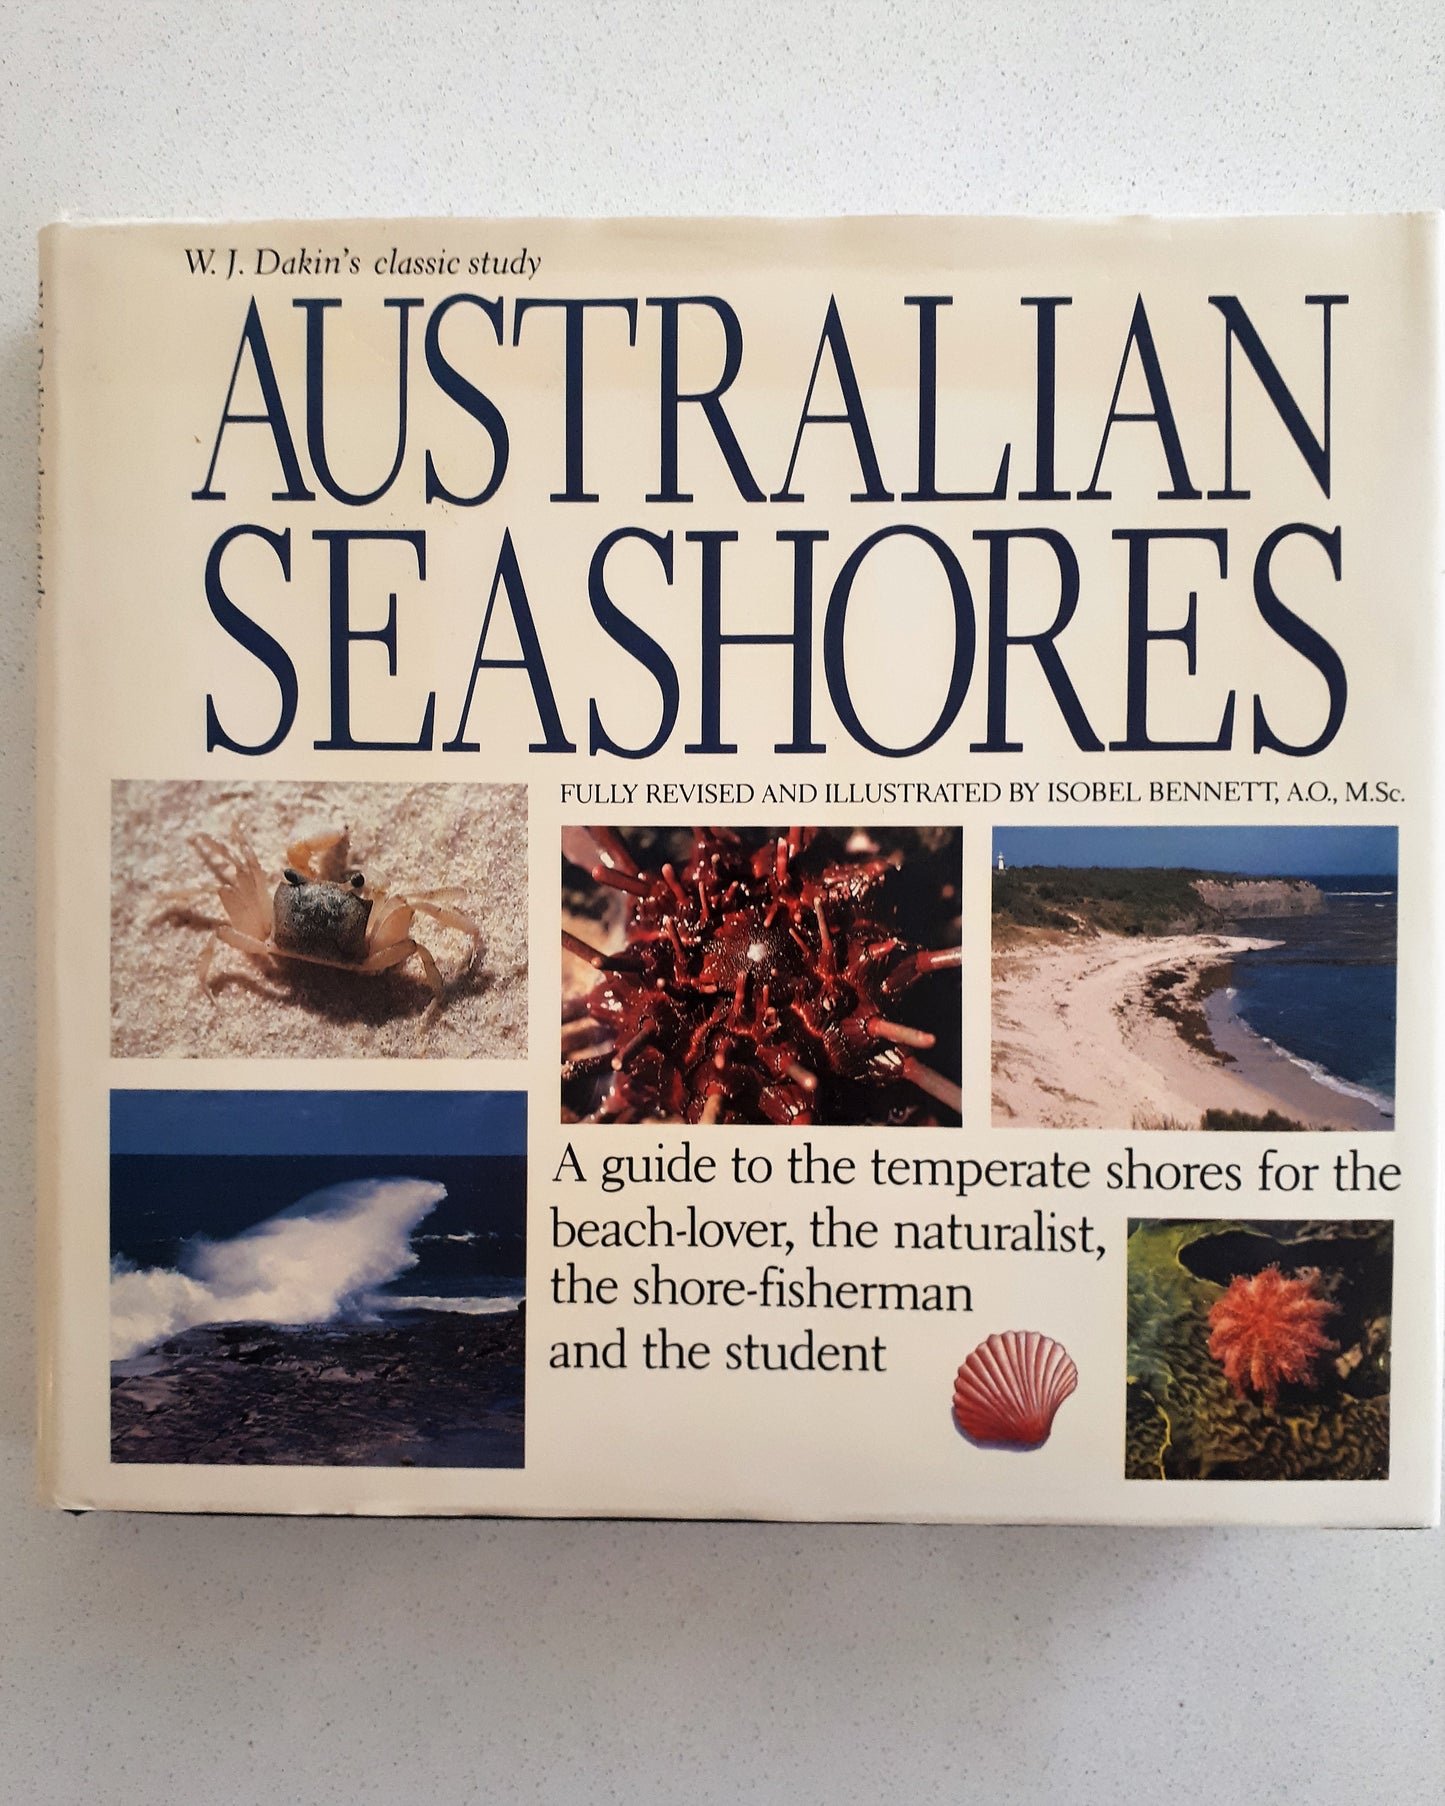 W.J. Dakin's Australian Seashores - Revised & Illustrated by Isobel Bennett